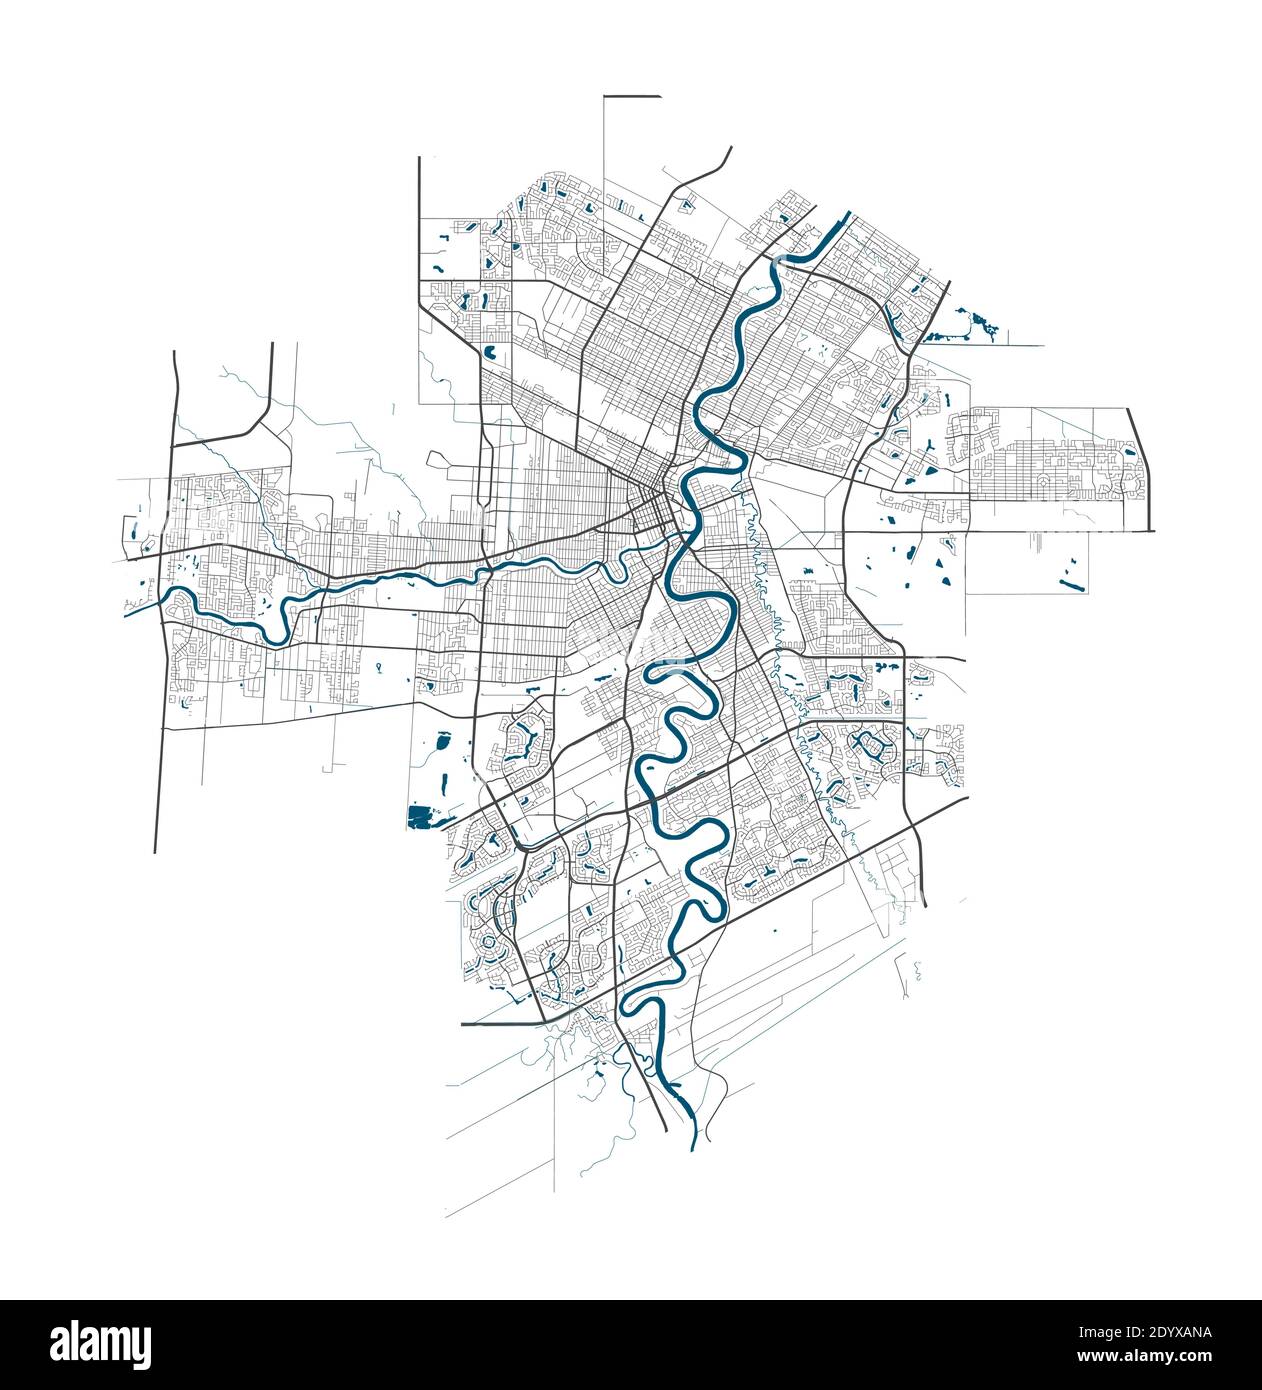 Mappa di Winnipeg. Mappa dettagliata dell'area amministrativa della città di Winnipeg. Panorama cittadino. Illustrazione vettoriale priva di royalty. Mappa lineare con autostrada Illustrazione Vettoriale